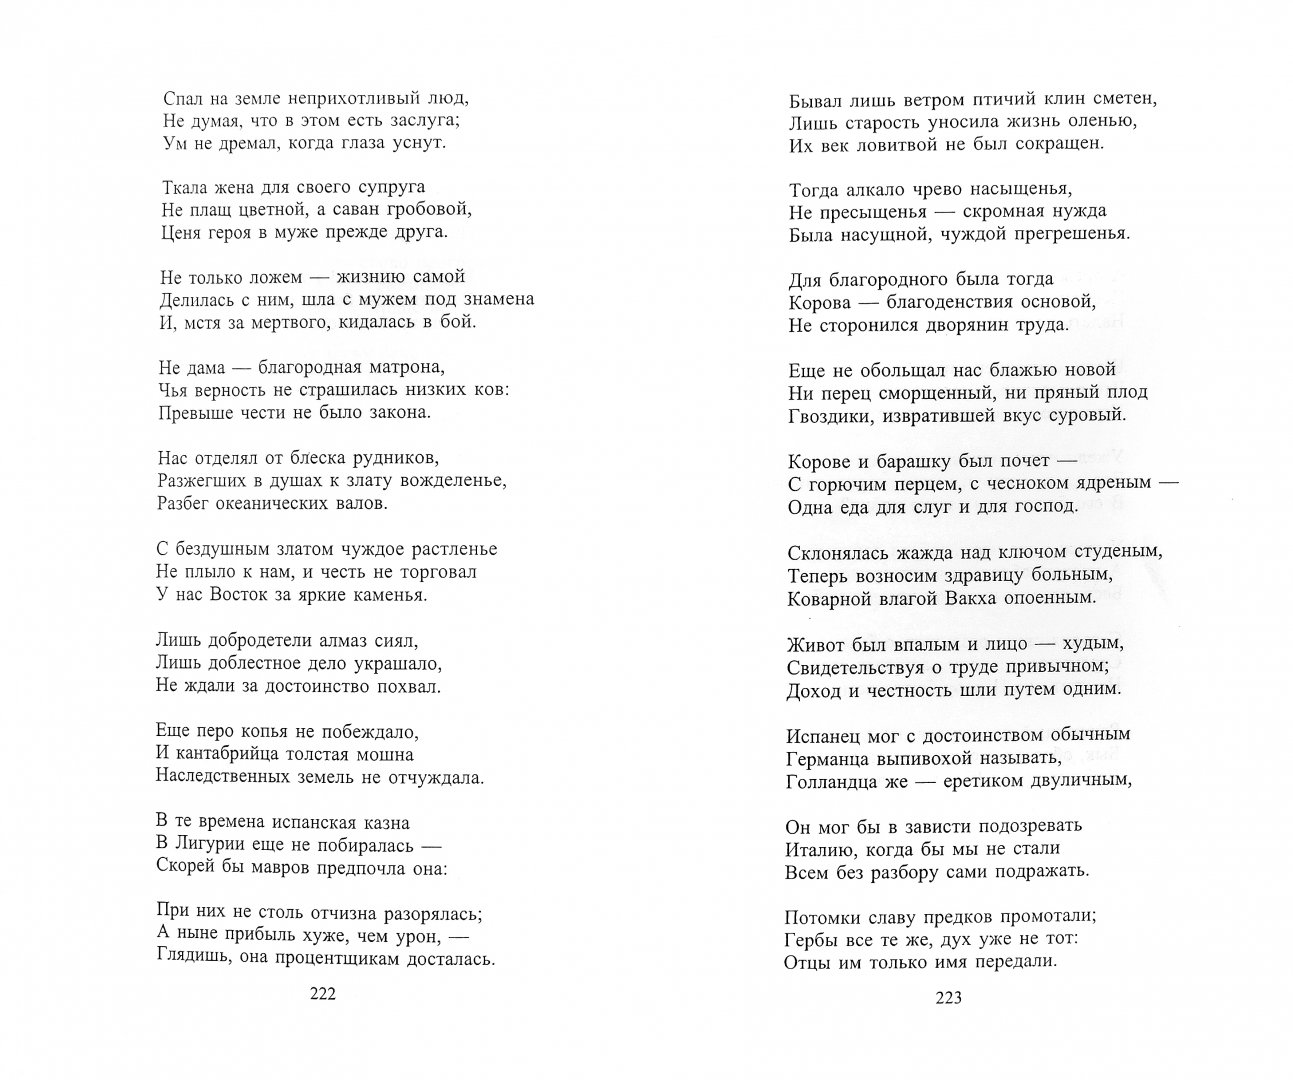 Иллюстрация 1 из 26 для Поэзия испанского барокко - Гонгора-и-Арготе, Де, Амескуа | Лабиринт - книги. Источник: Лабиринт